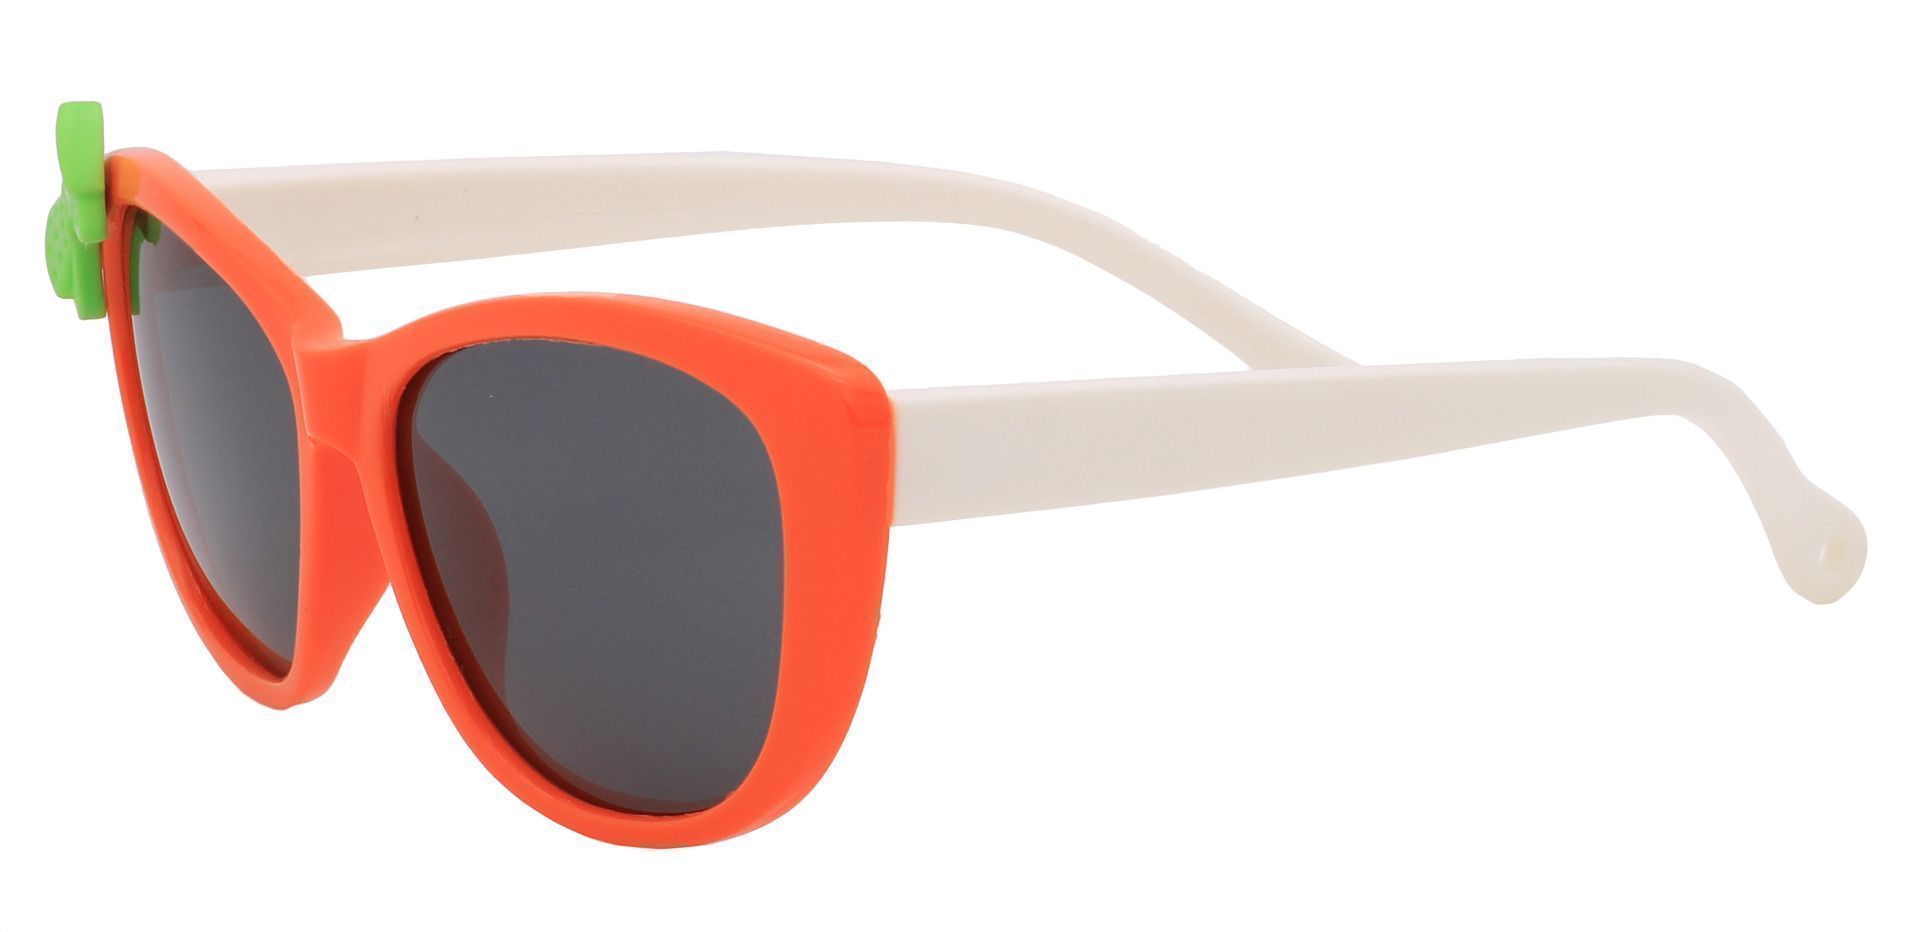 Mandarin Square Reading Sunglasses - Orange Frame With Gray Lenses